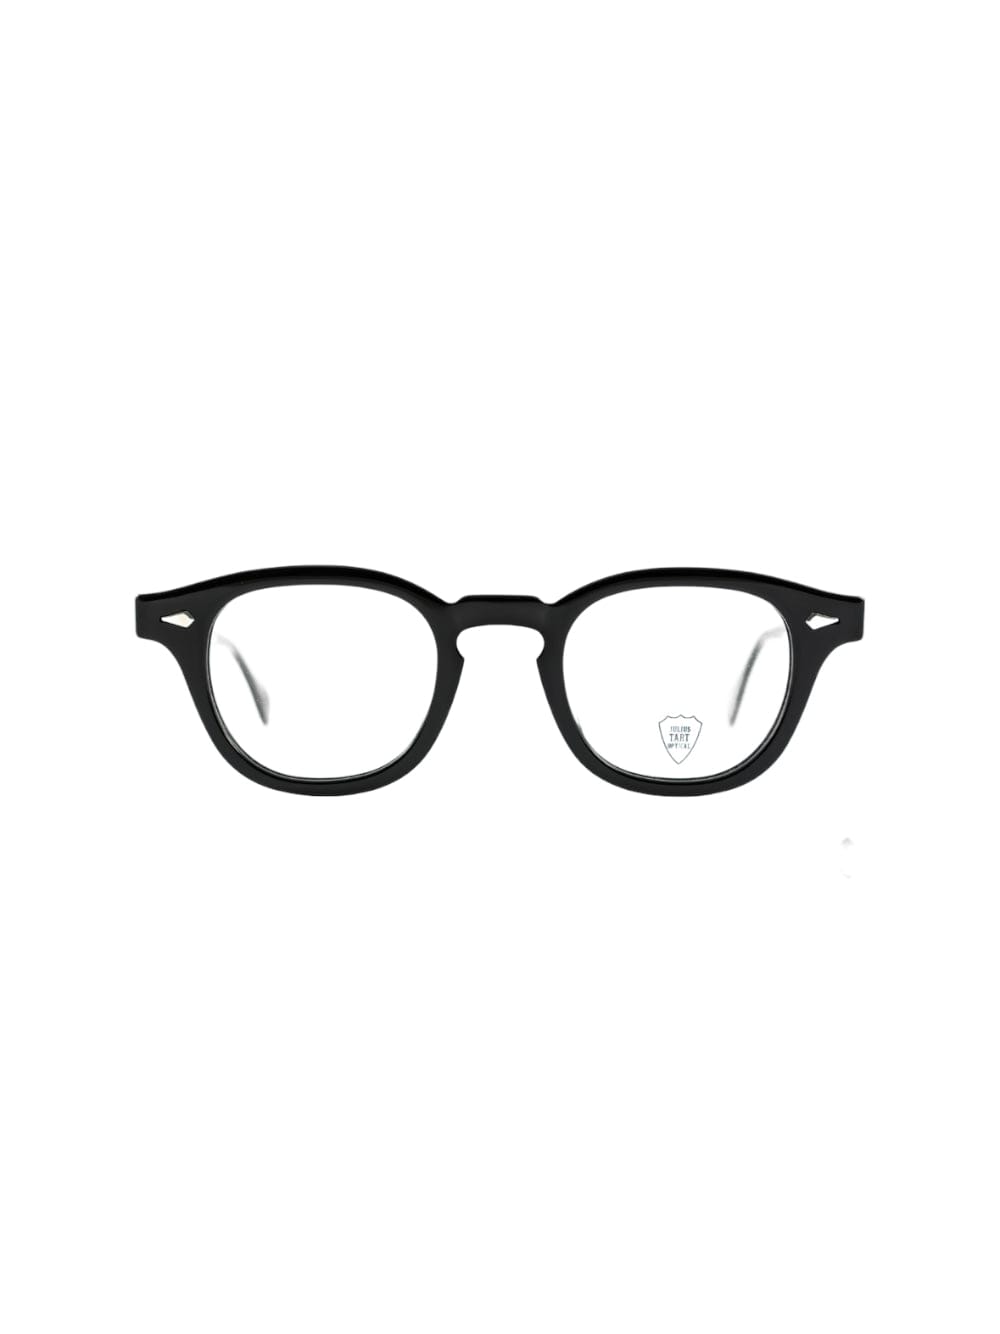 Julius Tart Optical Arold Glasses